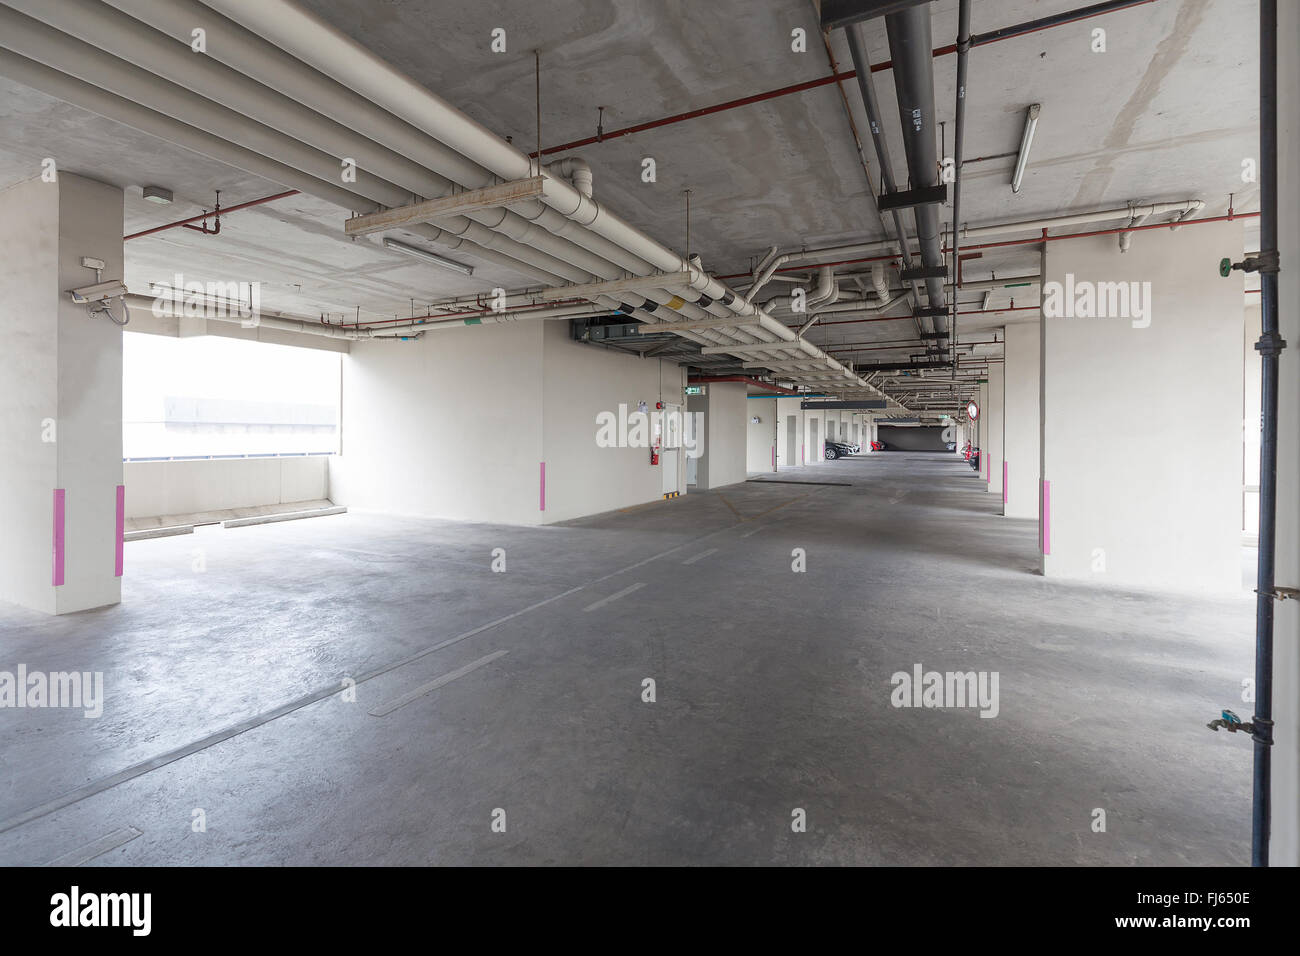 Lo spazio vuoto dell'area di parcheggio all'interno di edificio pubblico che ha molti tubi di acqua installati sul soffitto. Foto Stock